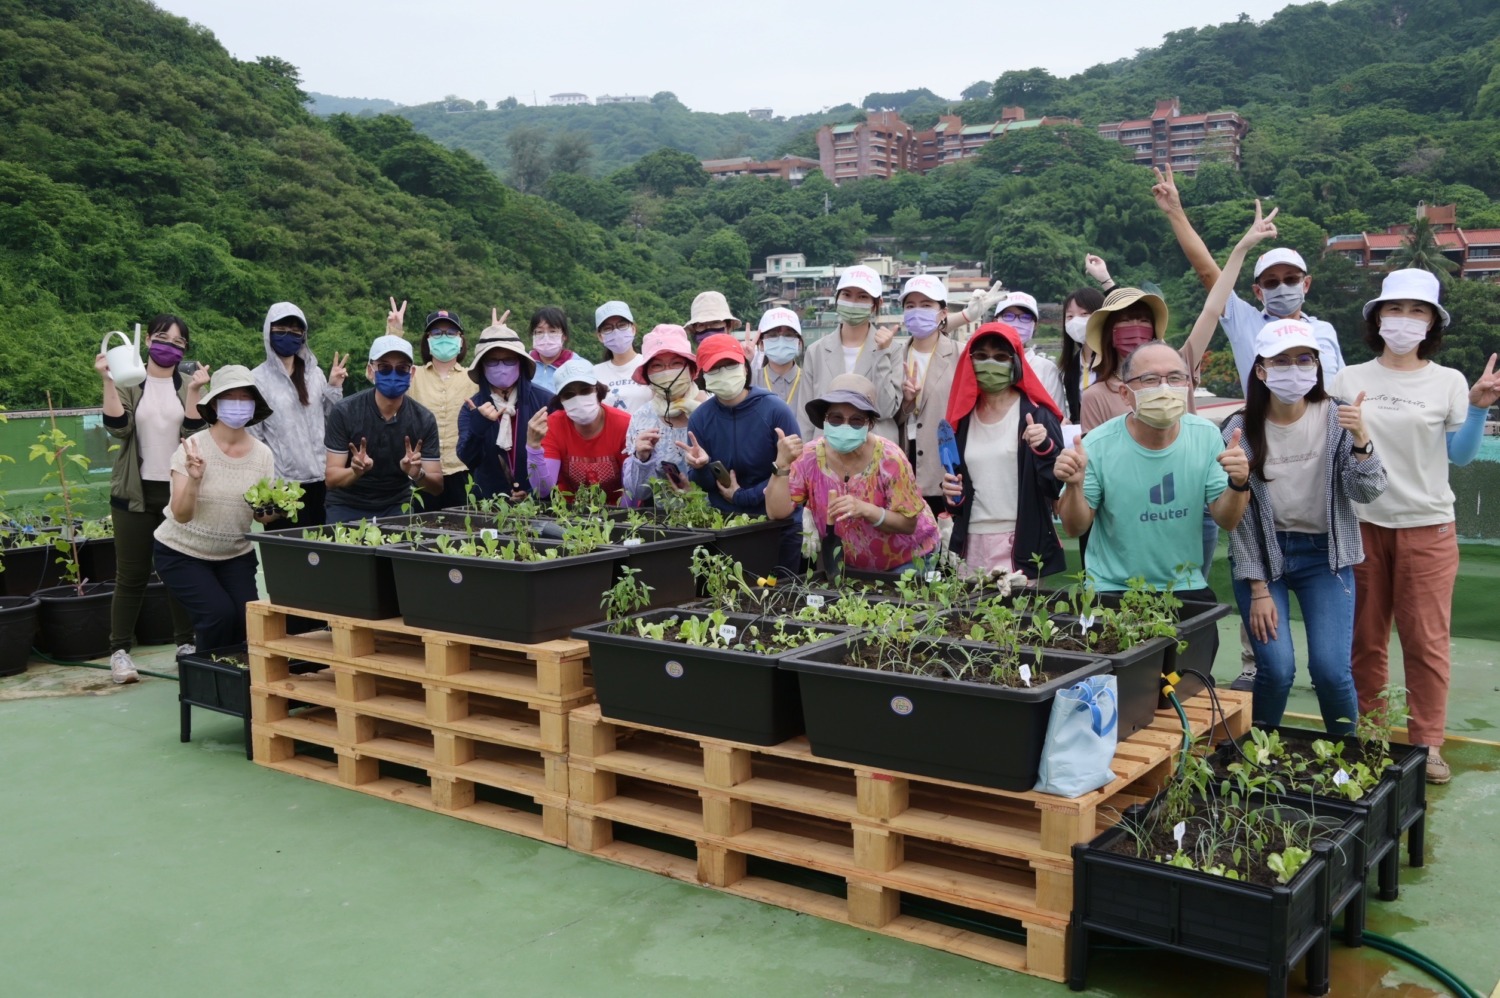 台灣港務公司攜手港埠協會及中山大學打造減碳綠農園